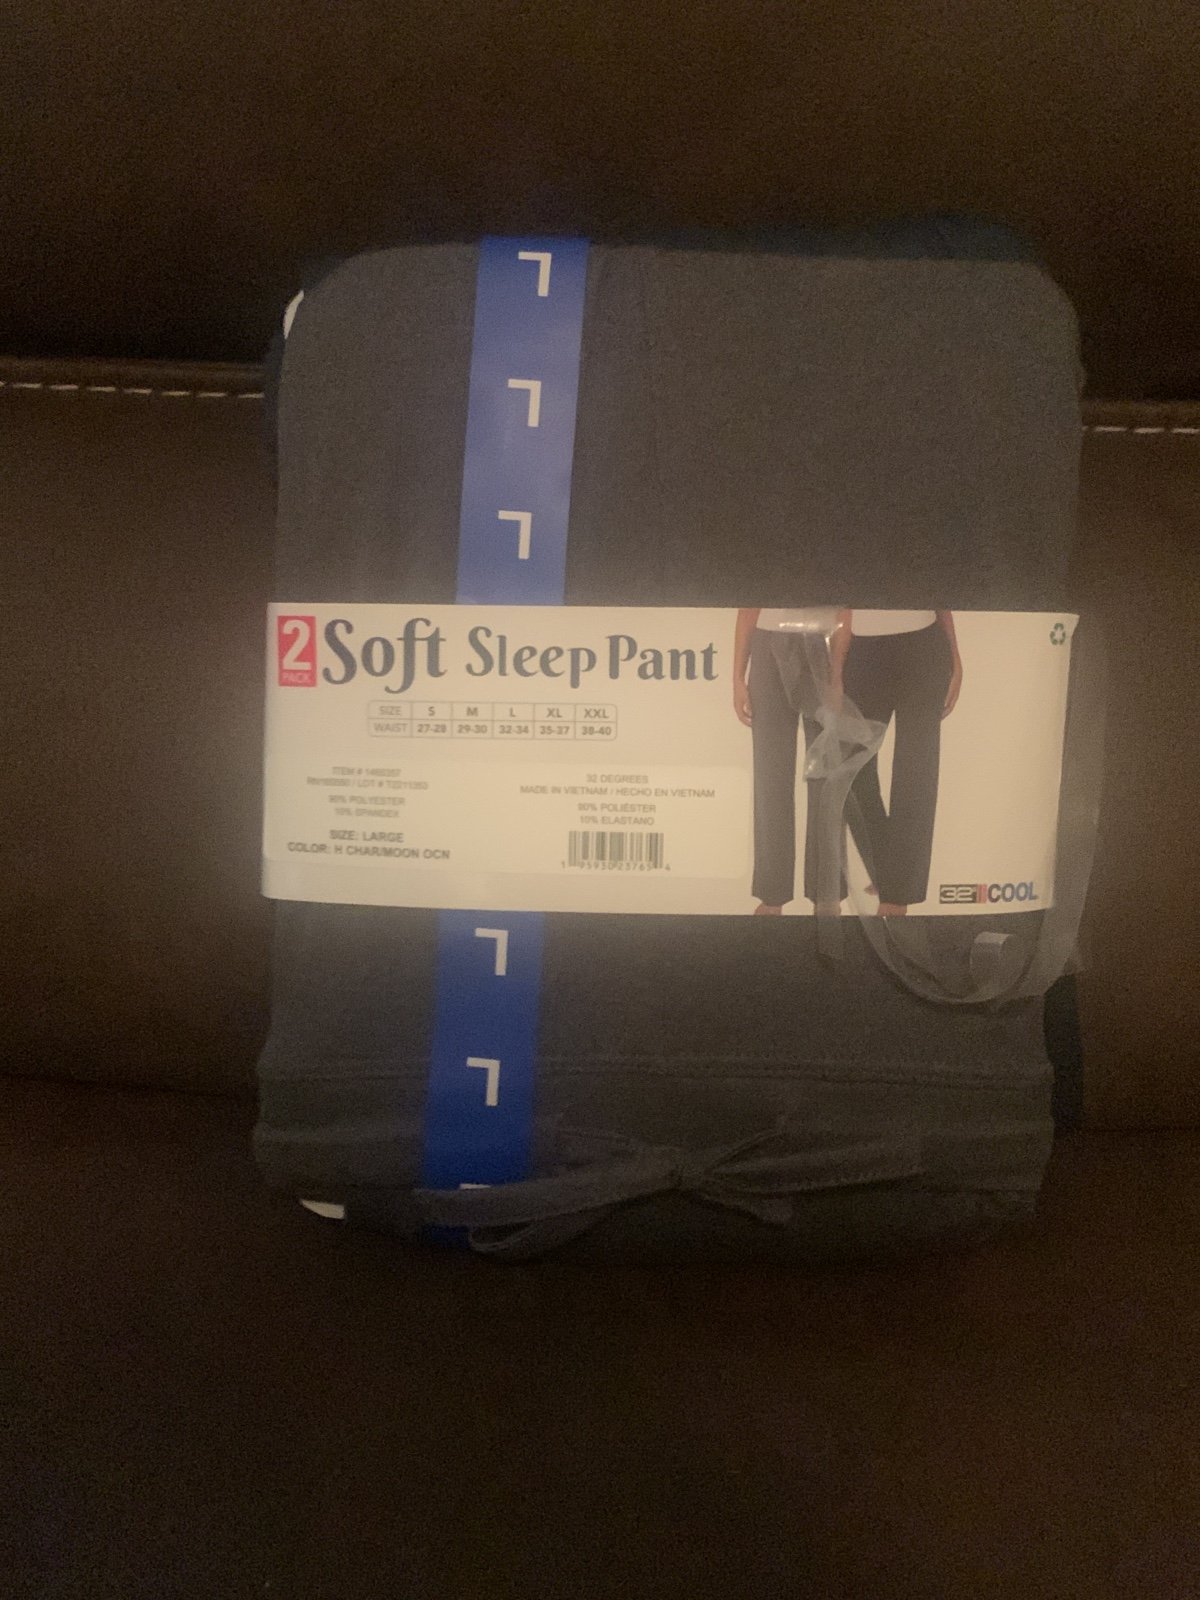 Great Women’s Soft Sleep Pants Size Large 2 pack MyrlOITgl outlet online shop